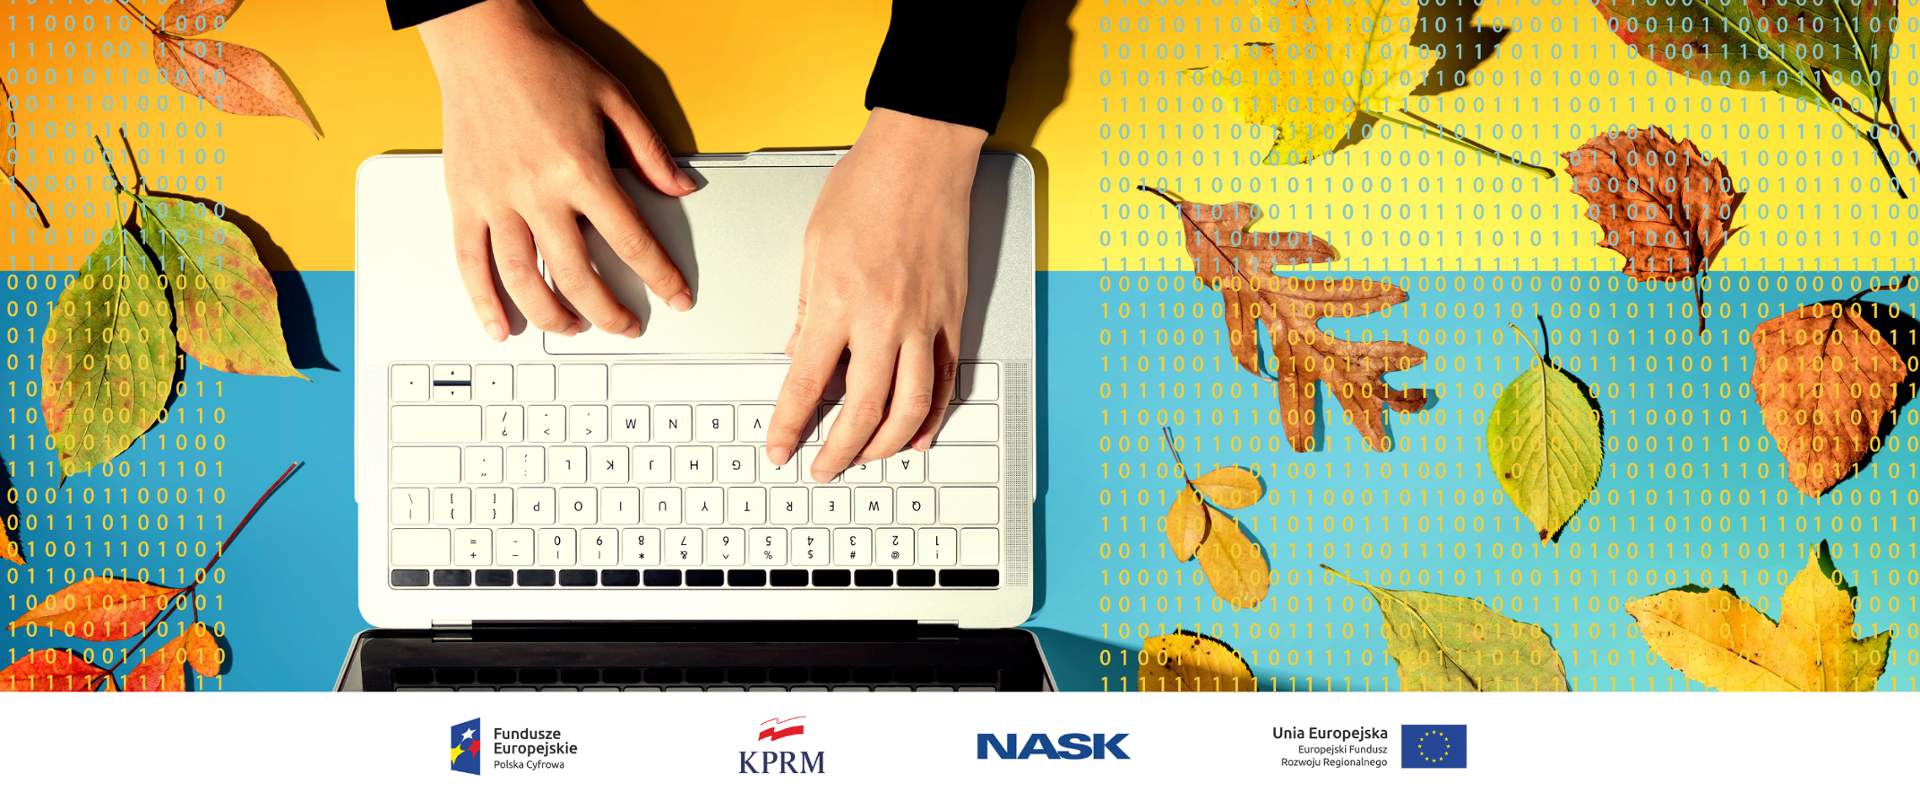 Grafika przedstawia ręce piszące na klawiaturze komputera na żółto-niebieskim tle na którym widać jesienne liście. Na pierwszym planie widać kolorowe linijki kody przykrywające liście.